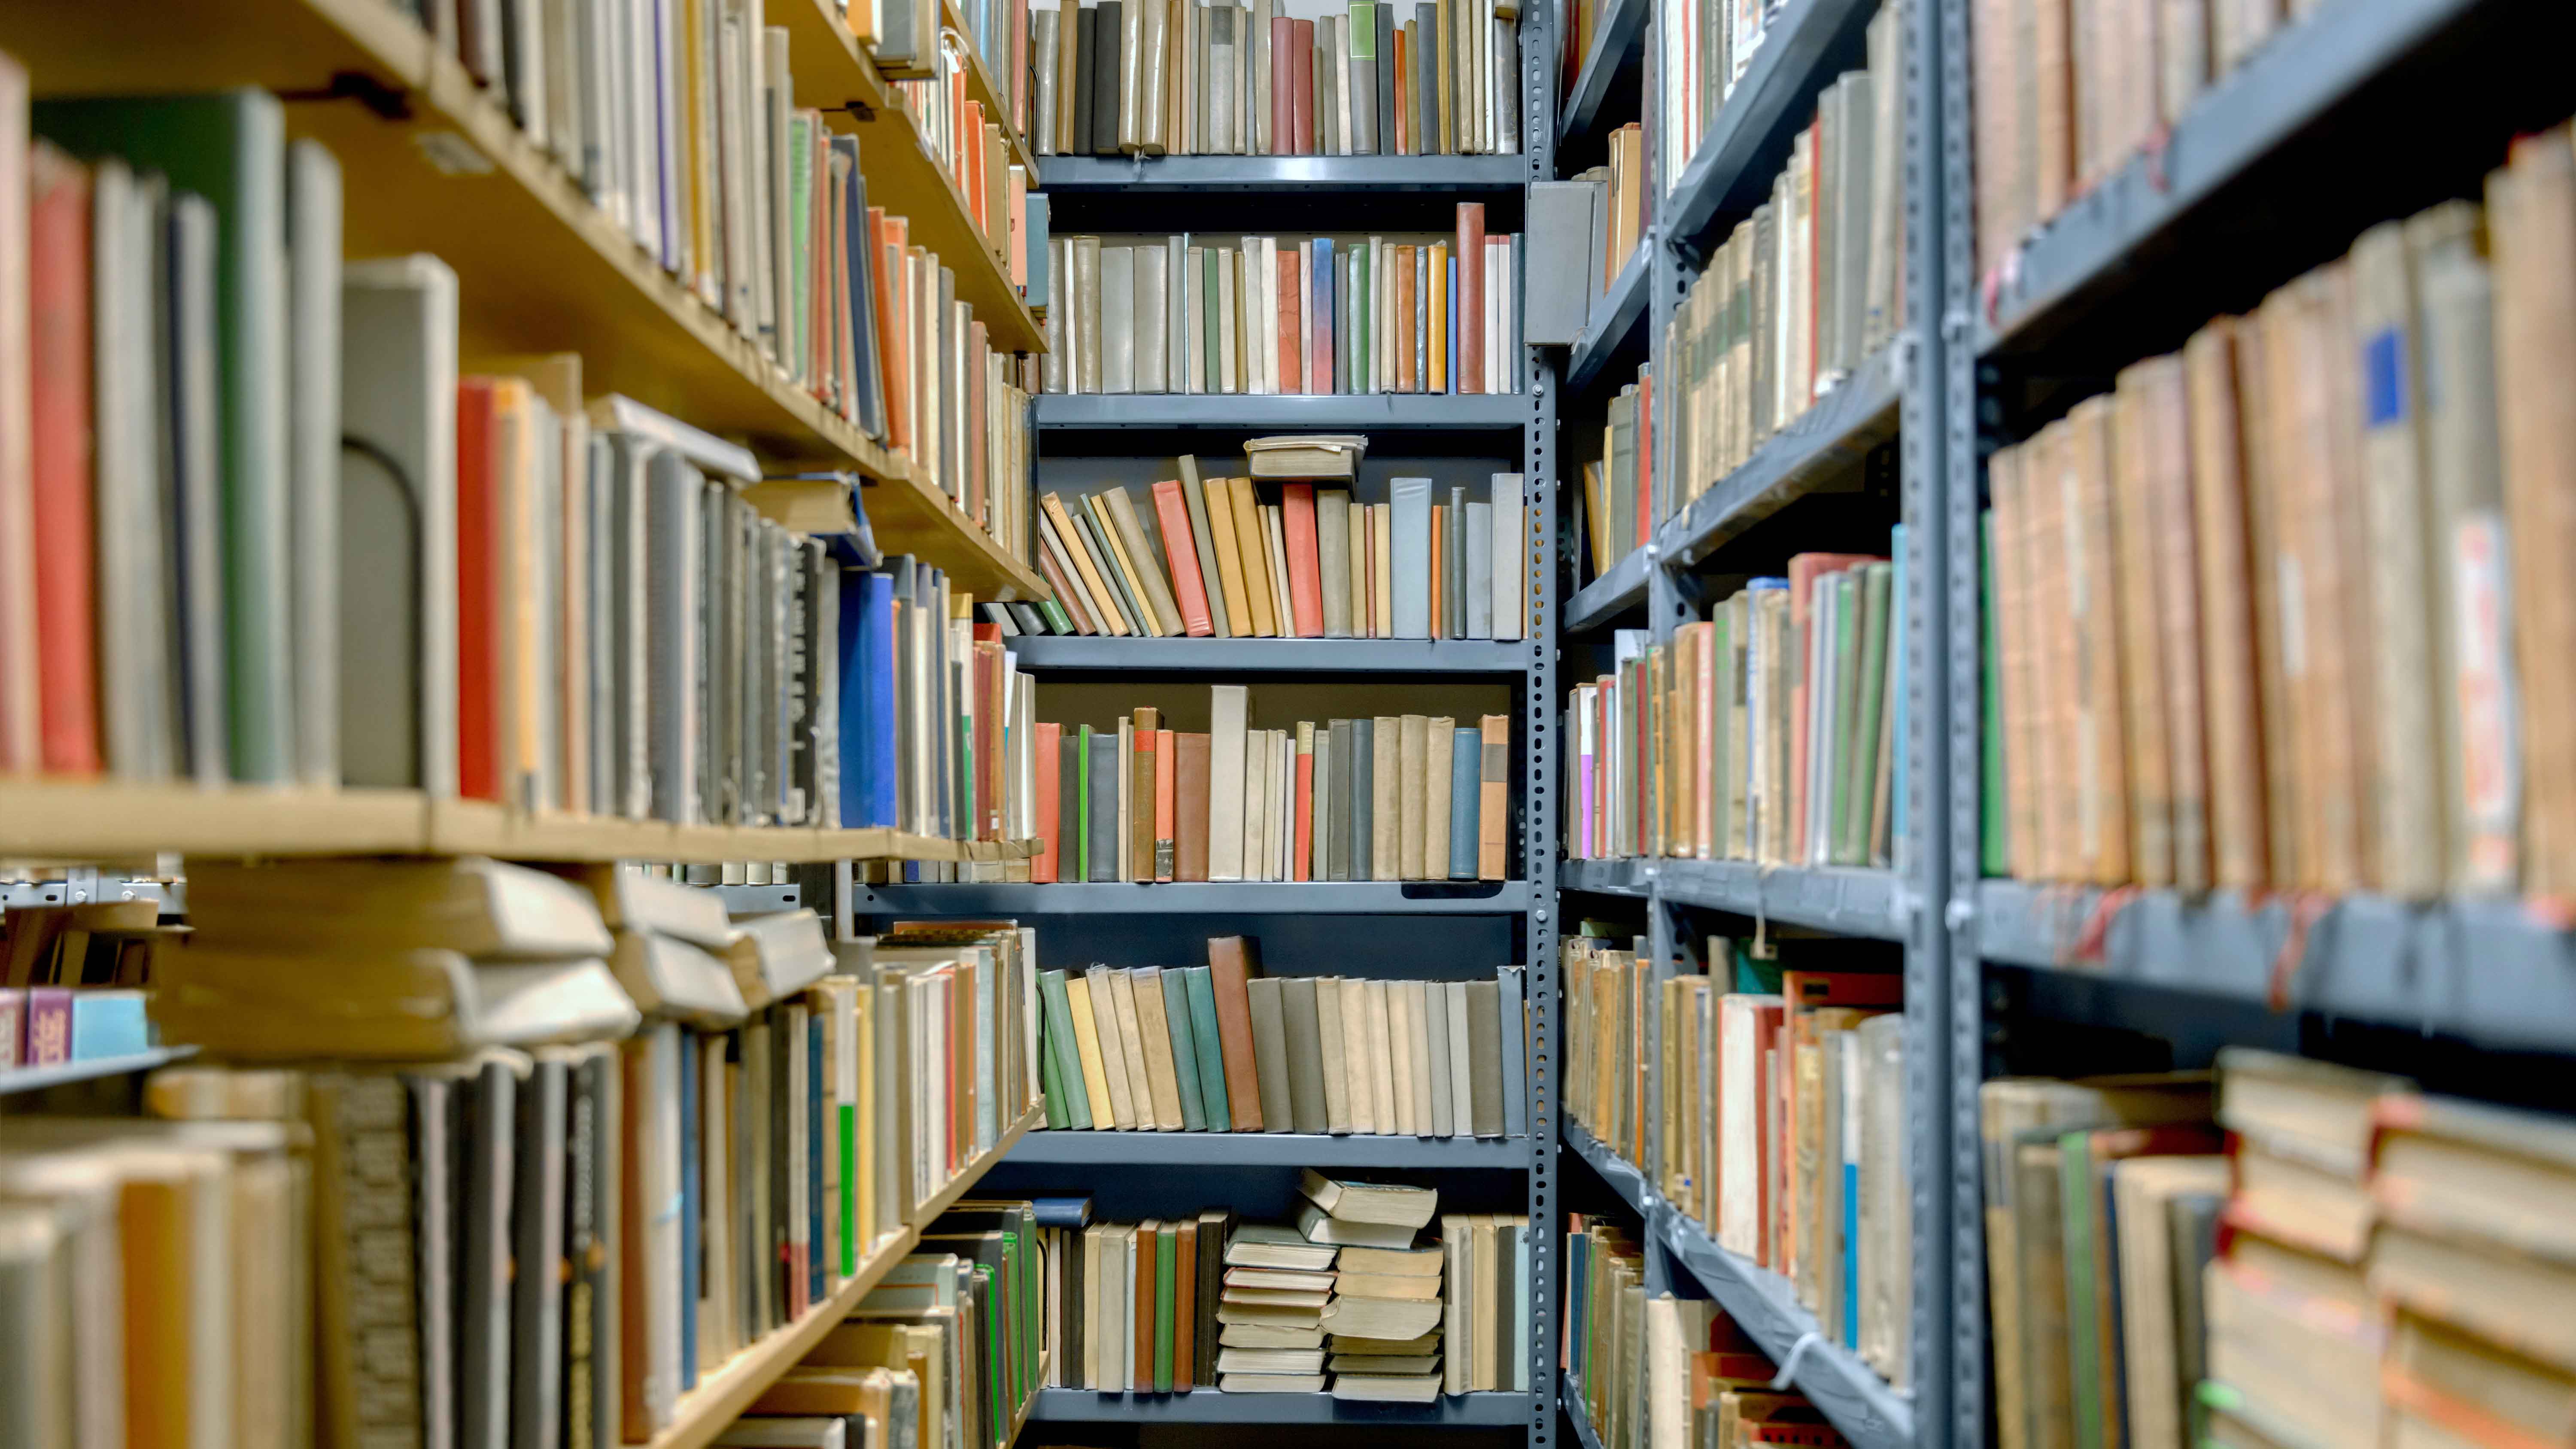 Many books filling the bookshelves of Volume One.